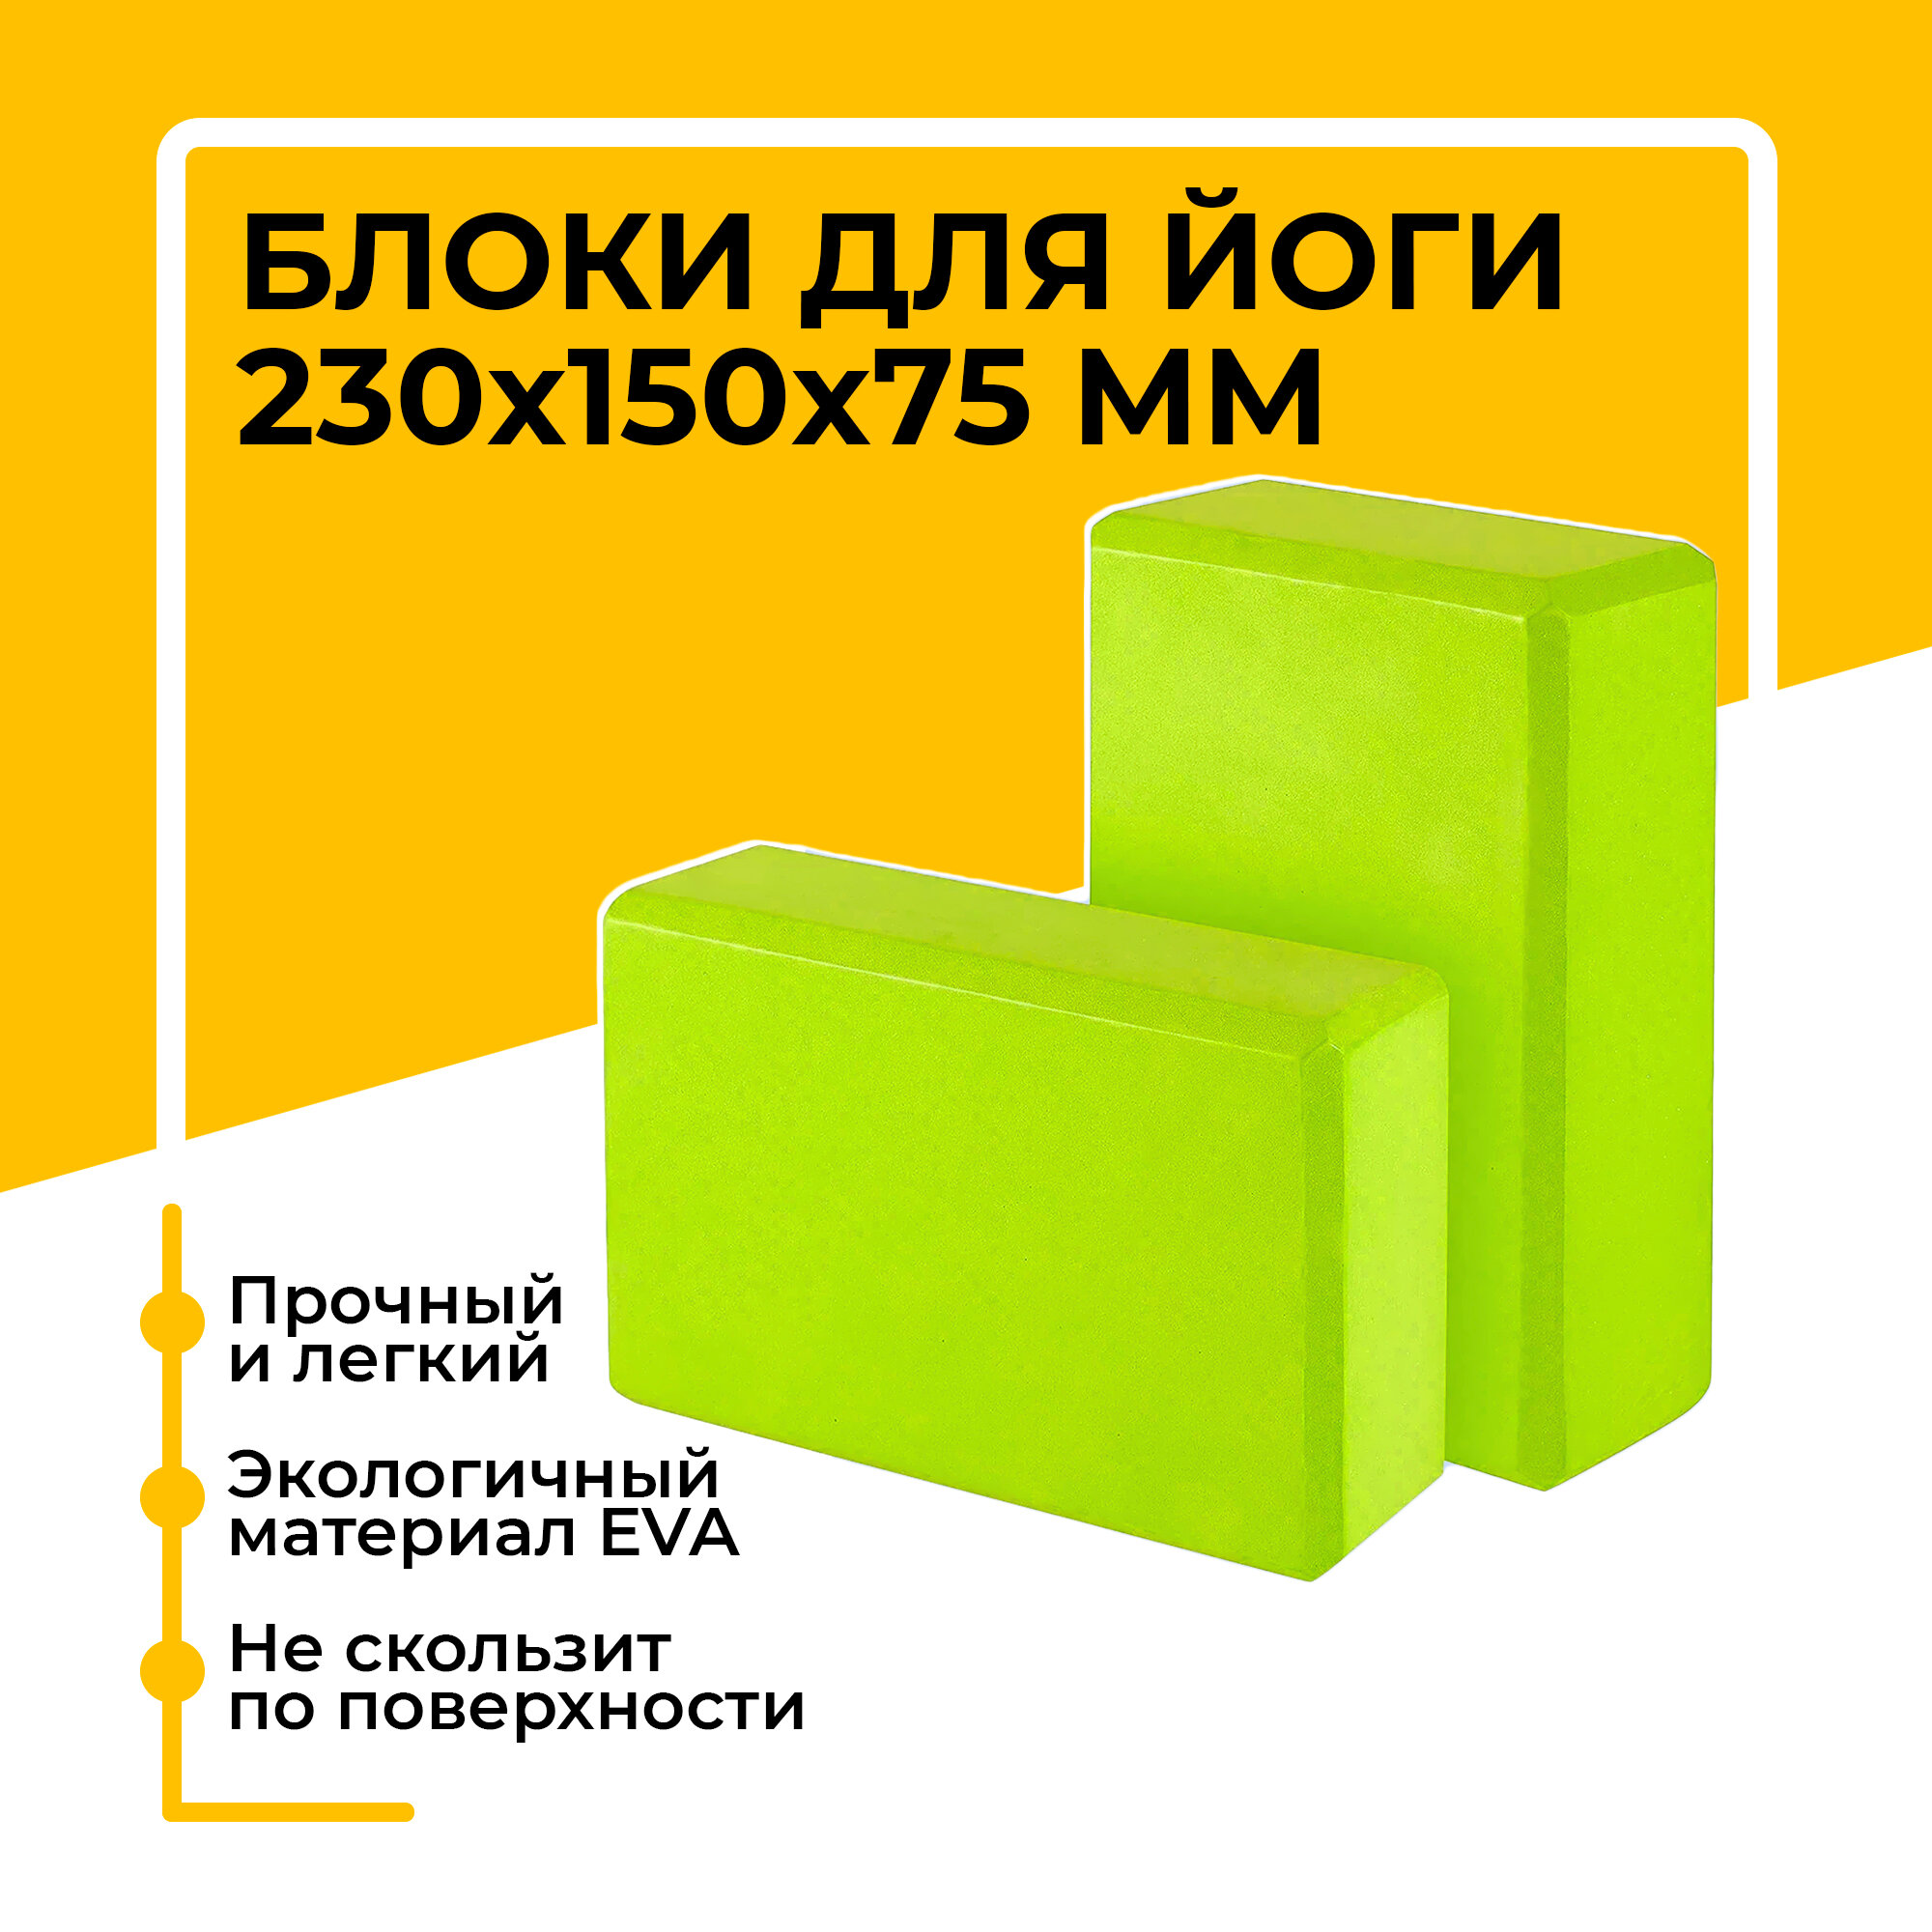 Блок (кирпич) для йоги EVA, 230х150х75 мм, зеленый, набор из 2 шт